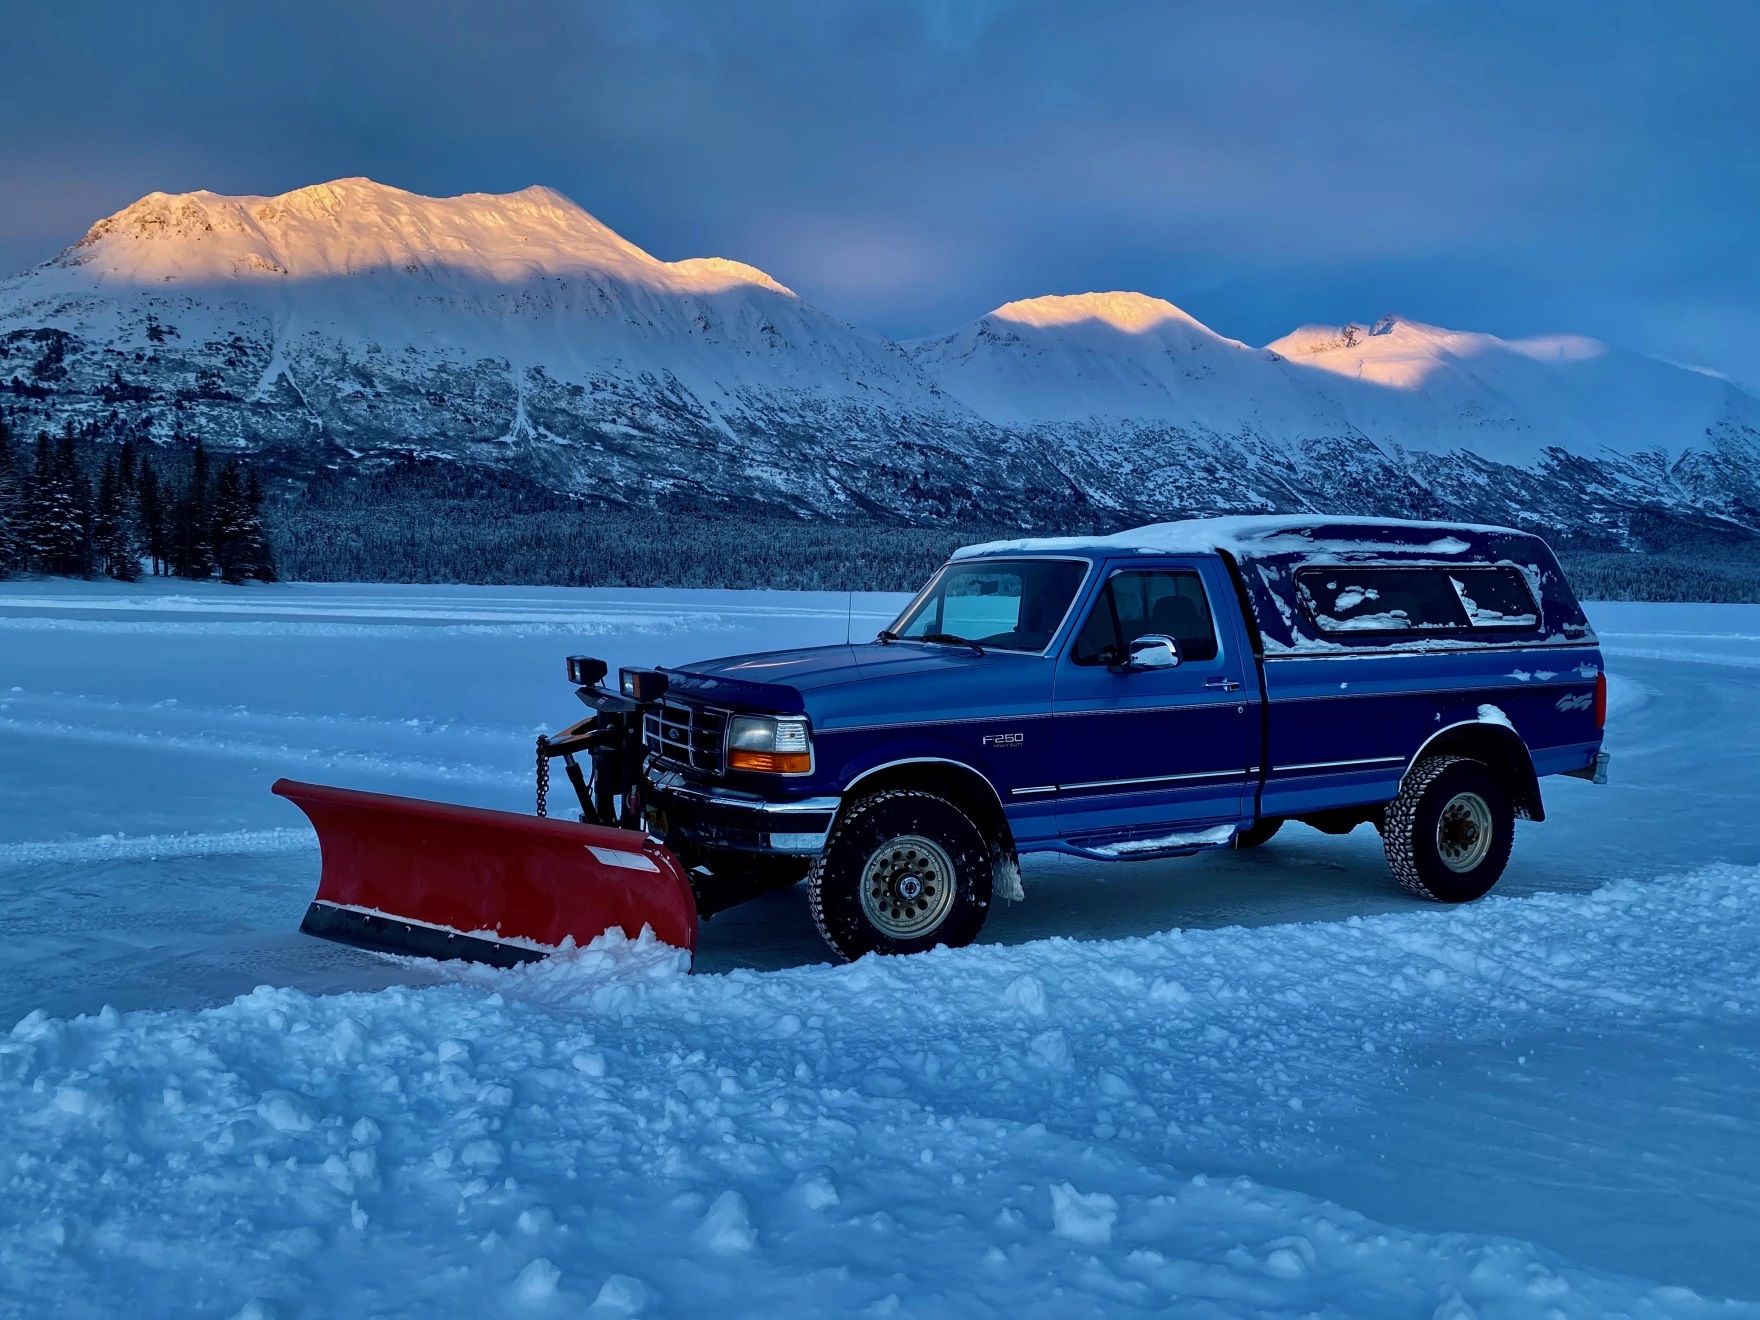 a Trail Lake plow truck